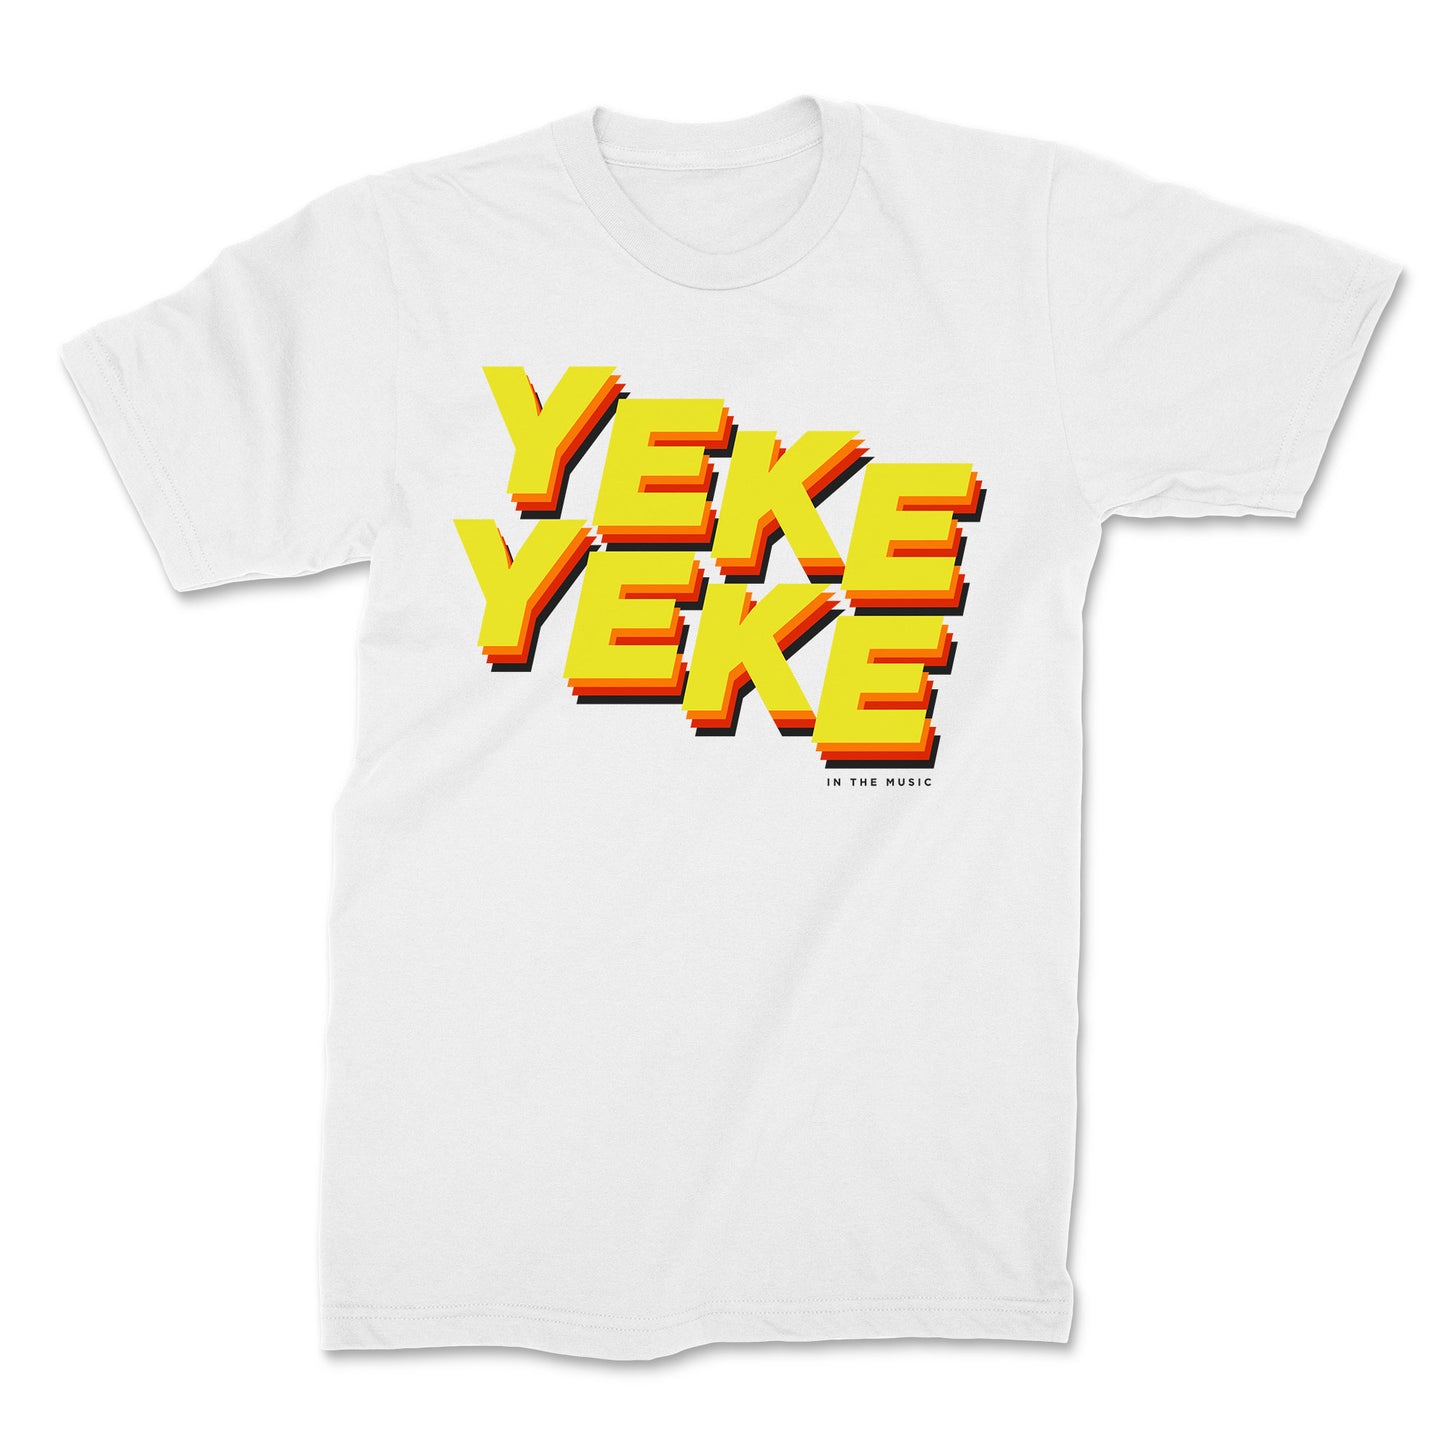 Yeke Yeke T-Shirt Original